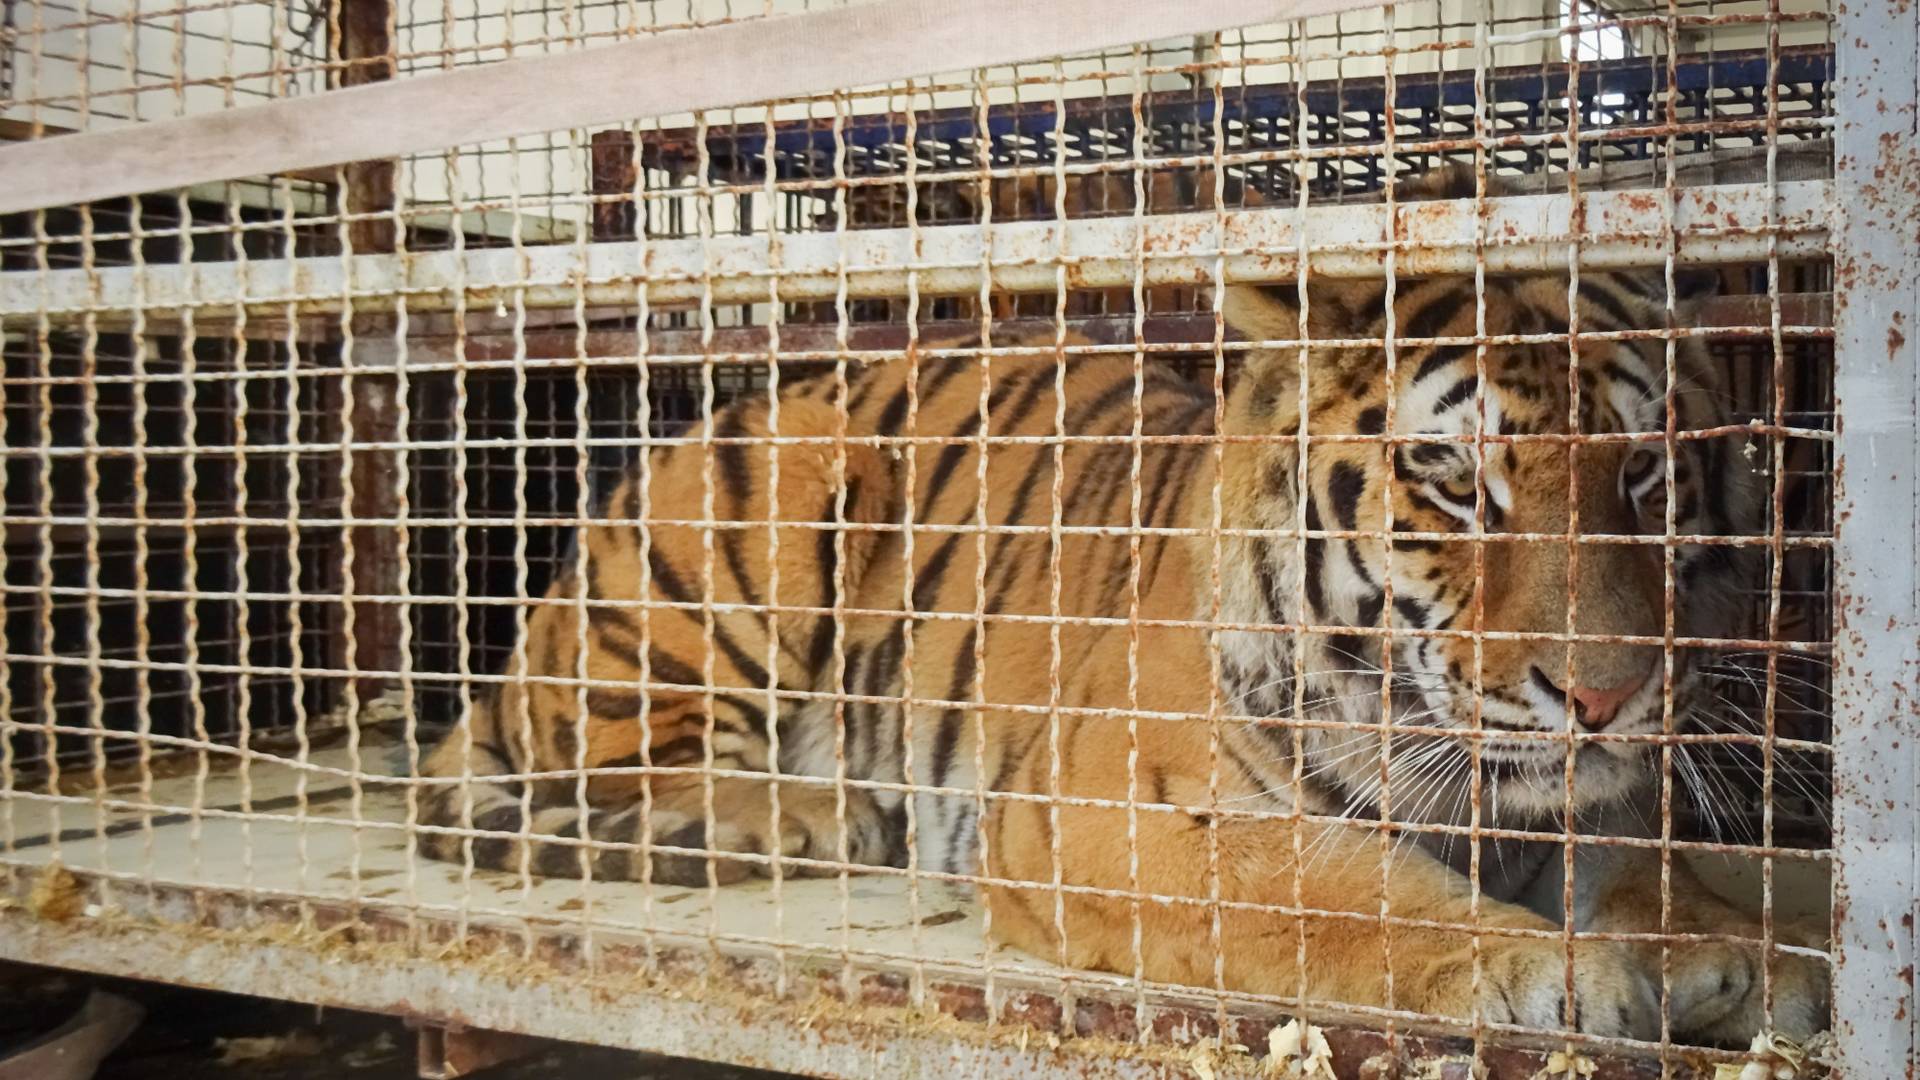 "To, co dzieje się w cyrkach, niewiele ma wspólnego z zachowaniem zwierząt na wolności" - ekspertka o tragedii tygrysów